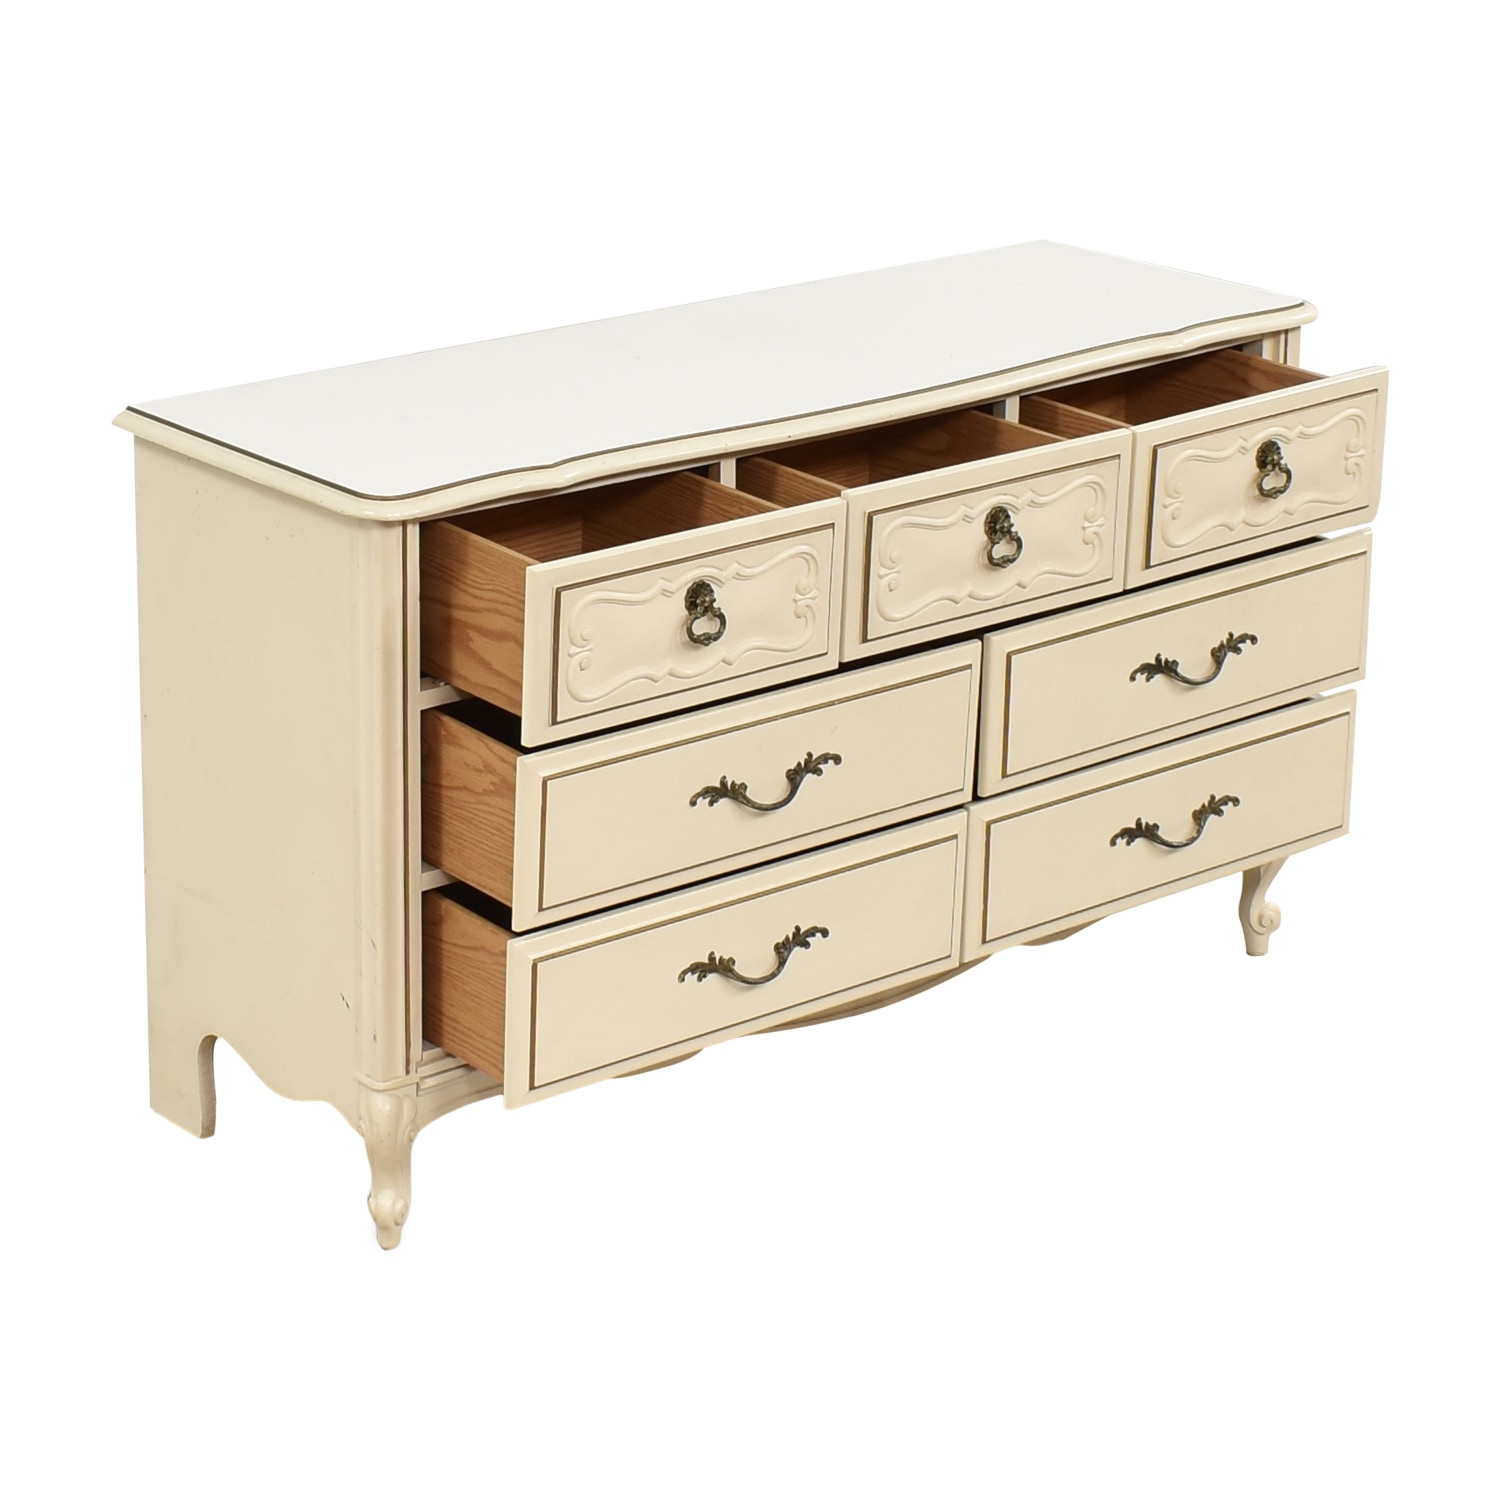 Lea Elation 7-Drawer Dresser- Furniture 505-271 at